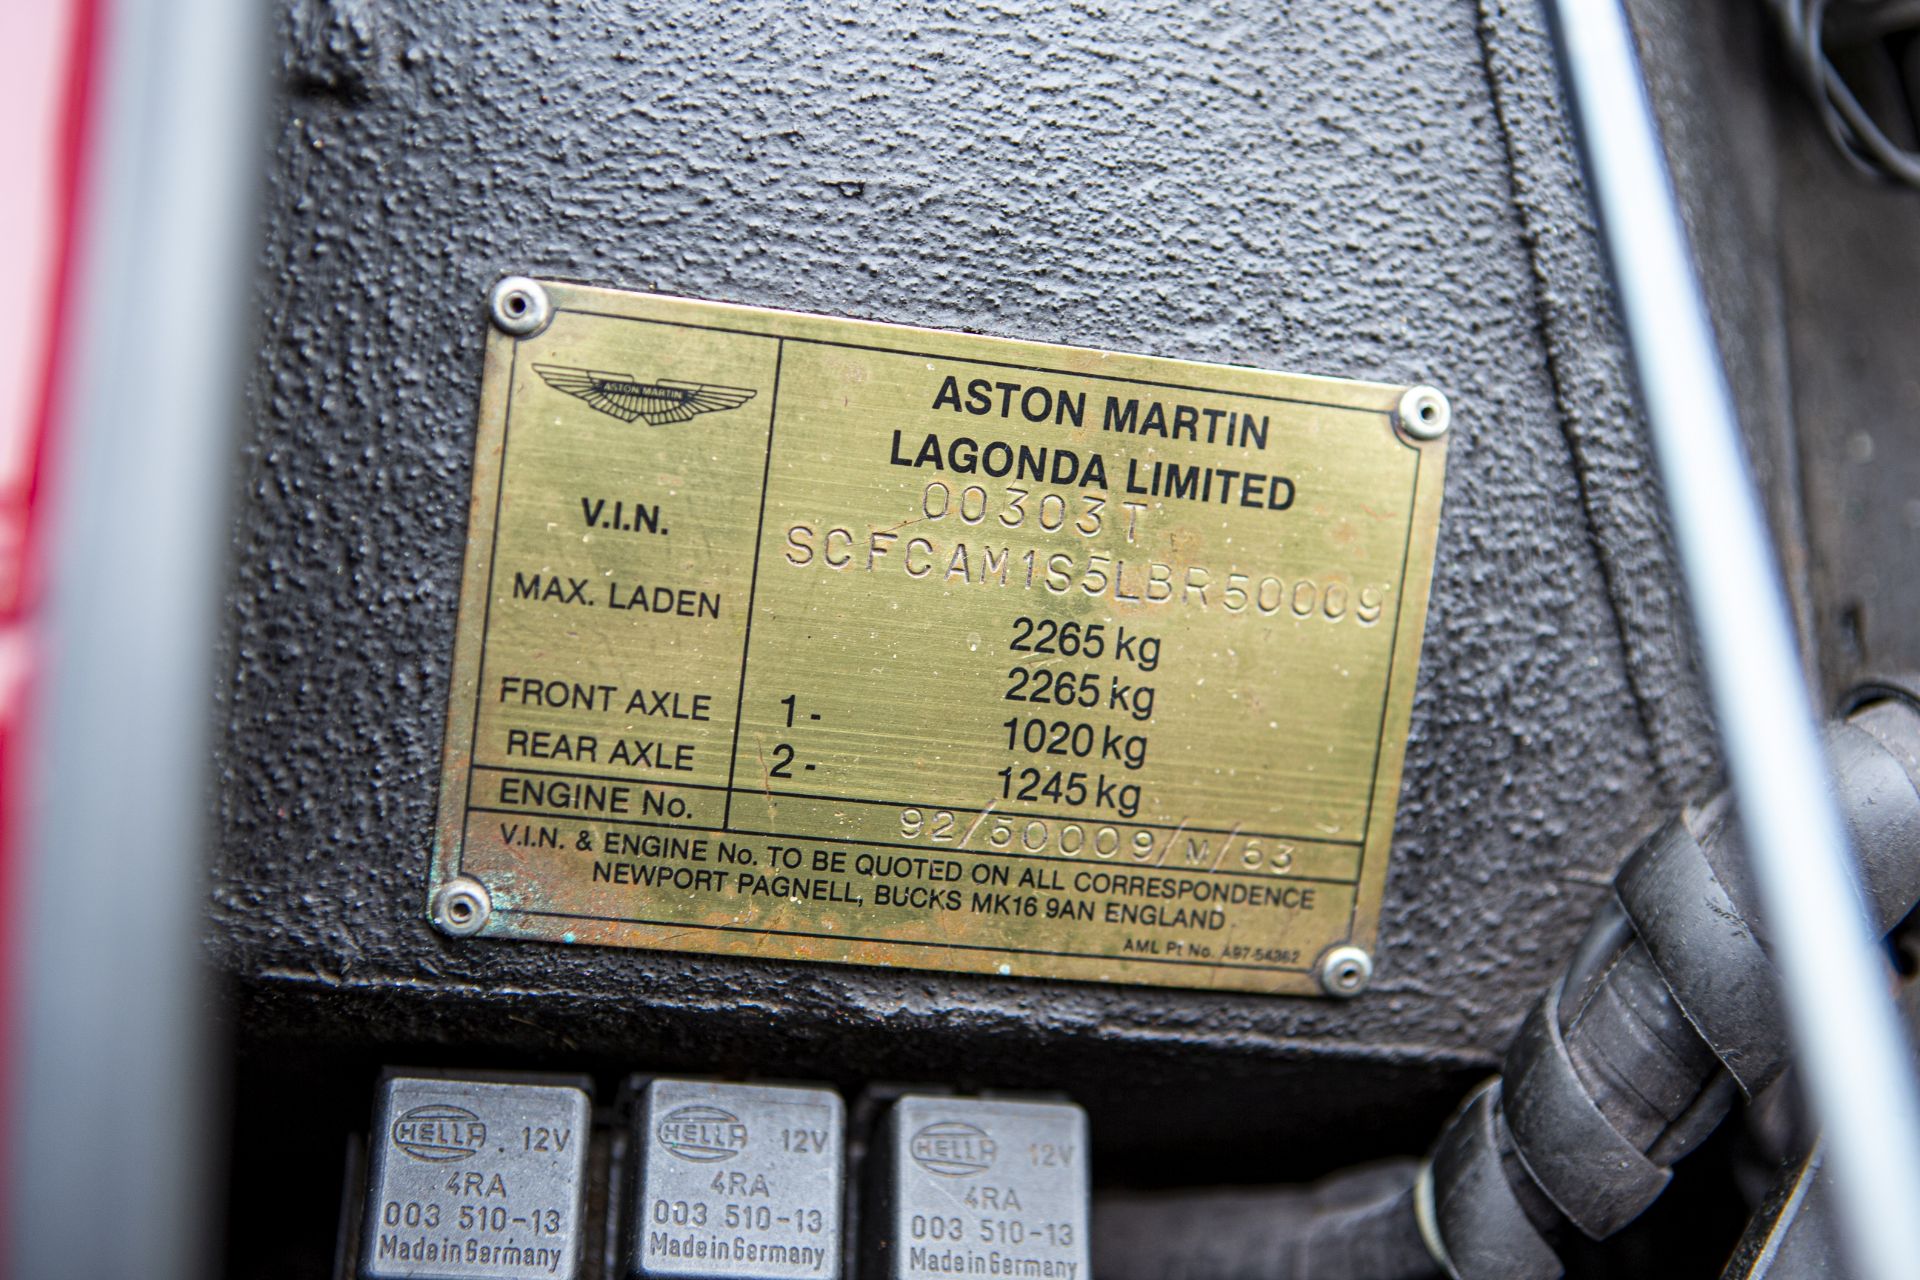 1990 Aston Martin Virage 6.3-Litre 'Wide Body' Coupé Chassis no. SCFCAM15LBR50009 - Bild 22 aus 35